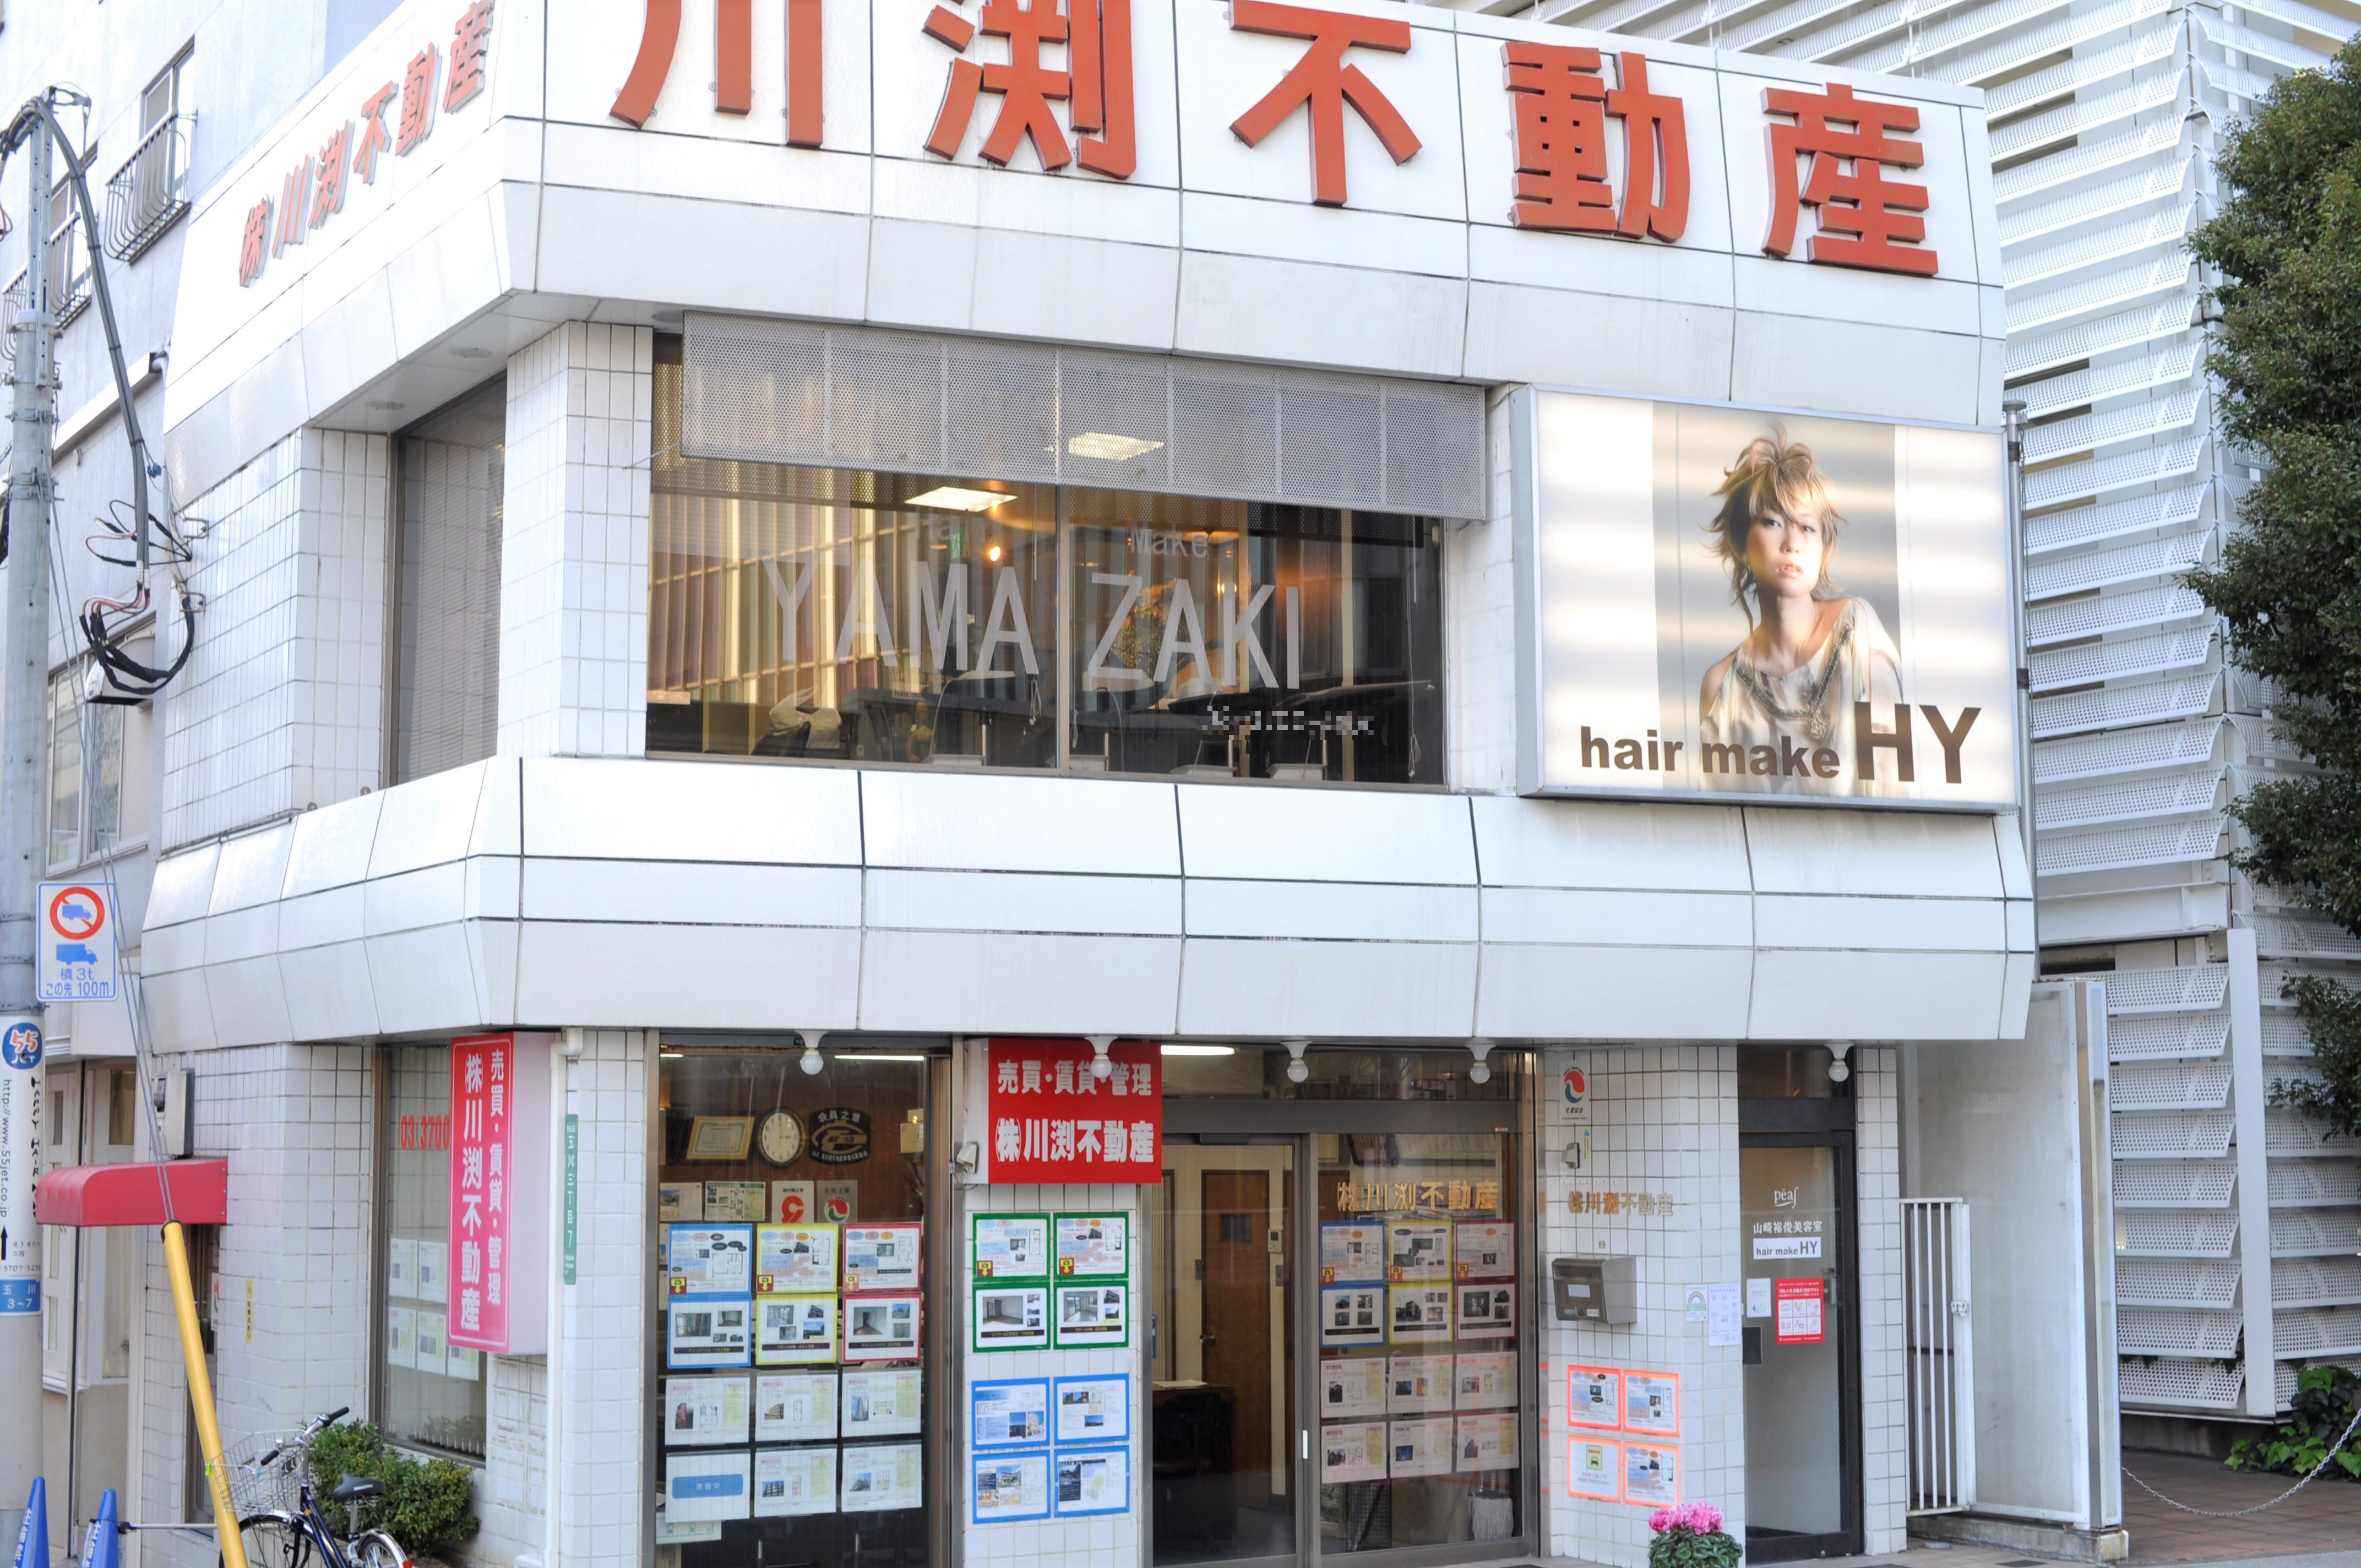 hair make HY 二子玉川店のアイキャッチ画像